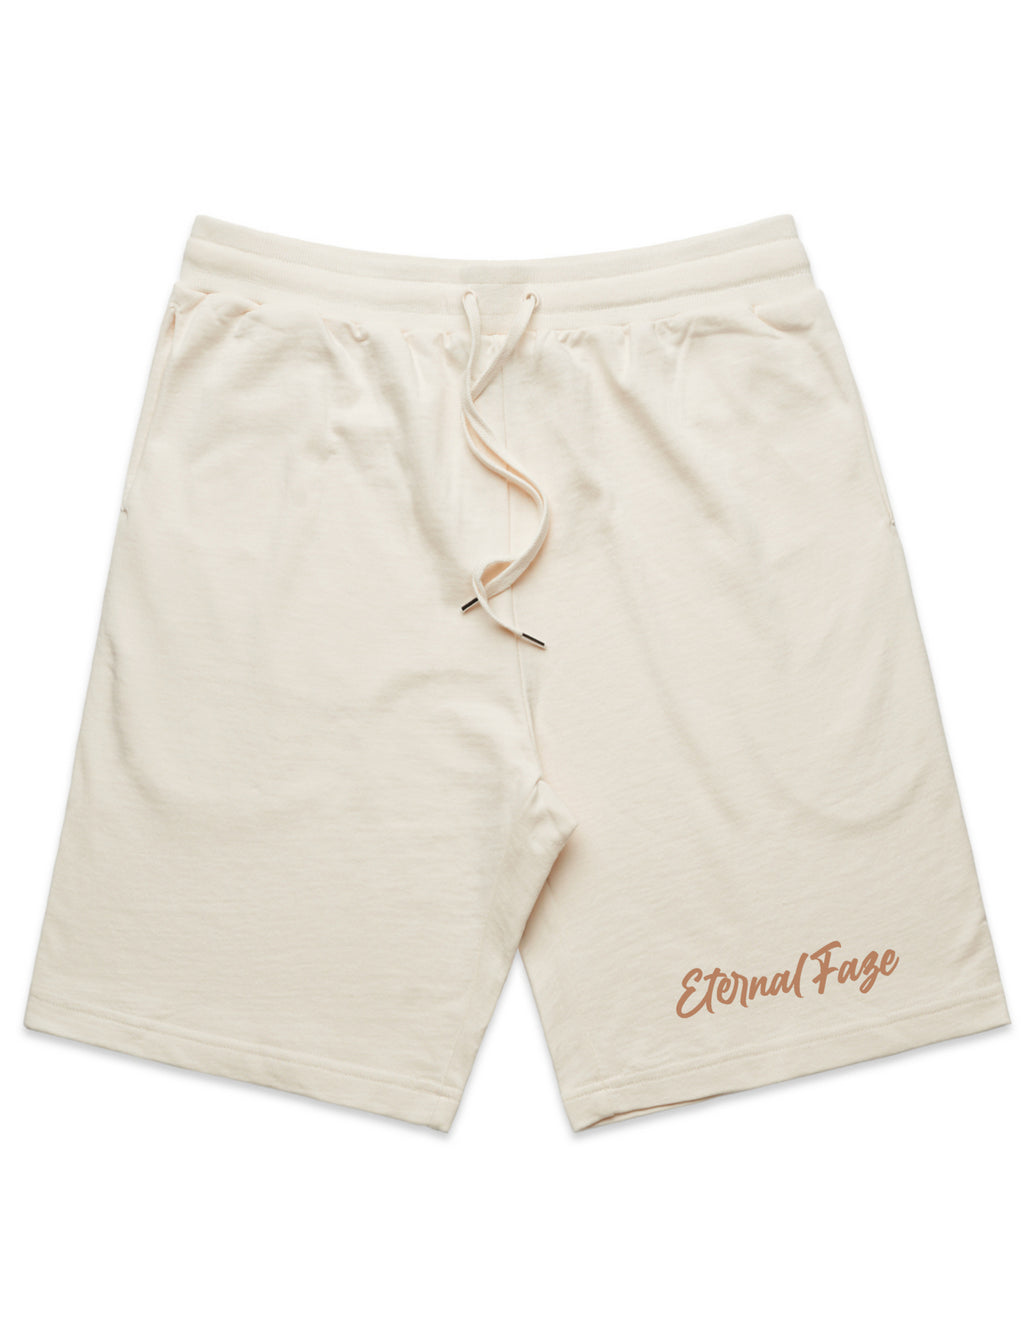 unFaze'd Ferrero Shorts Embroidered - Eternal Faze